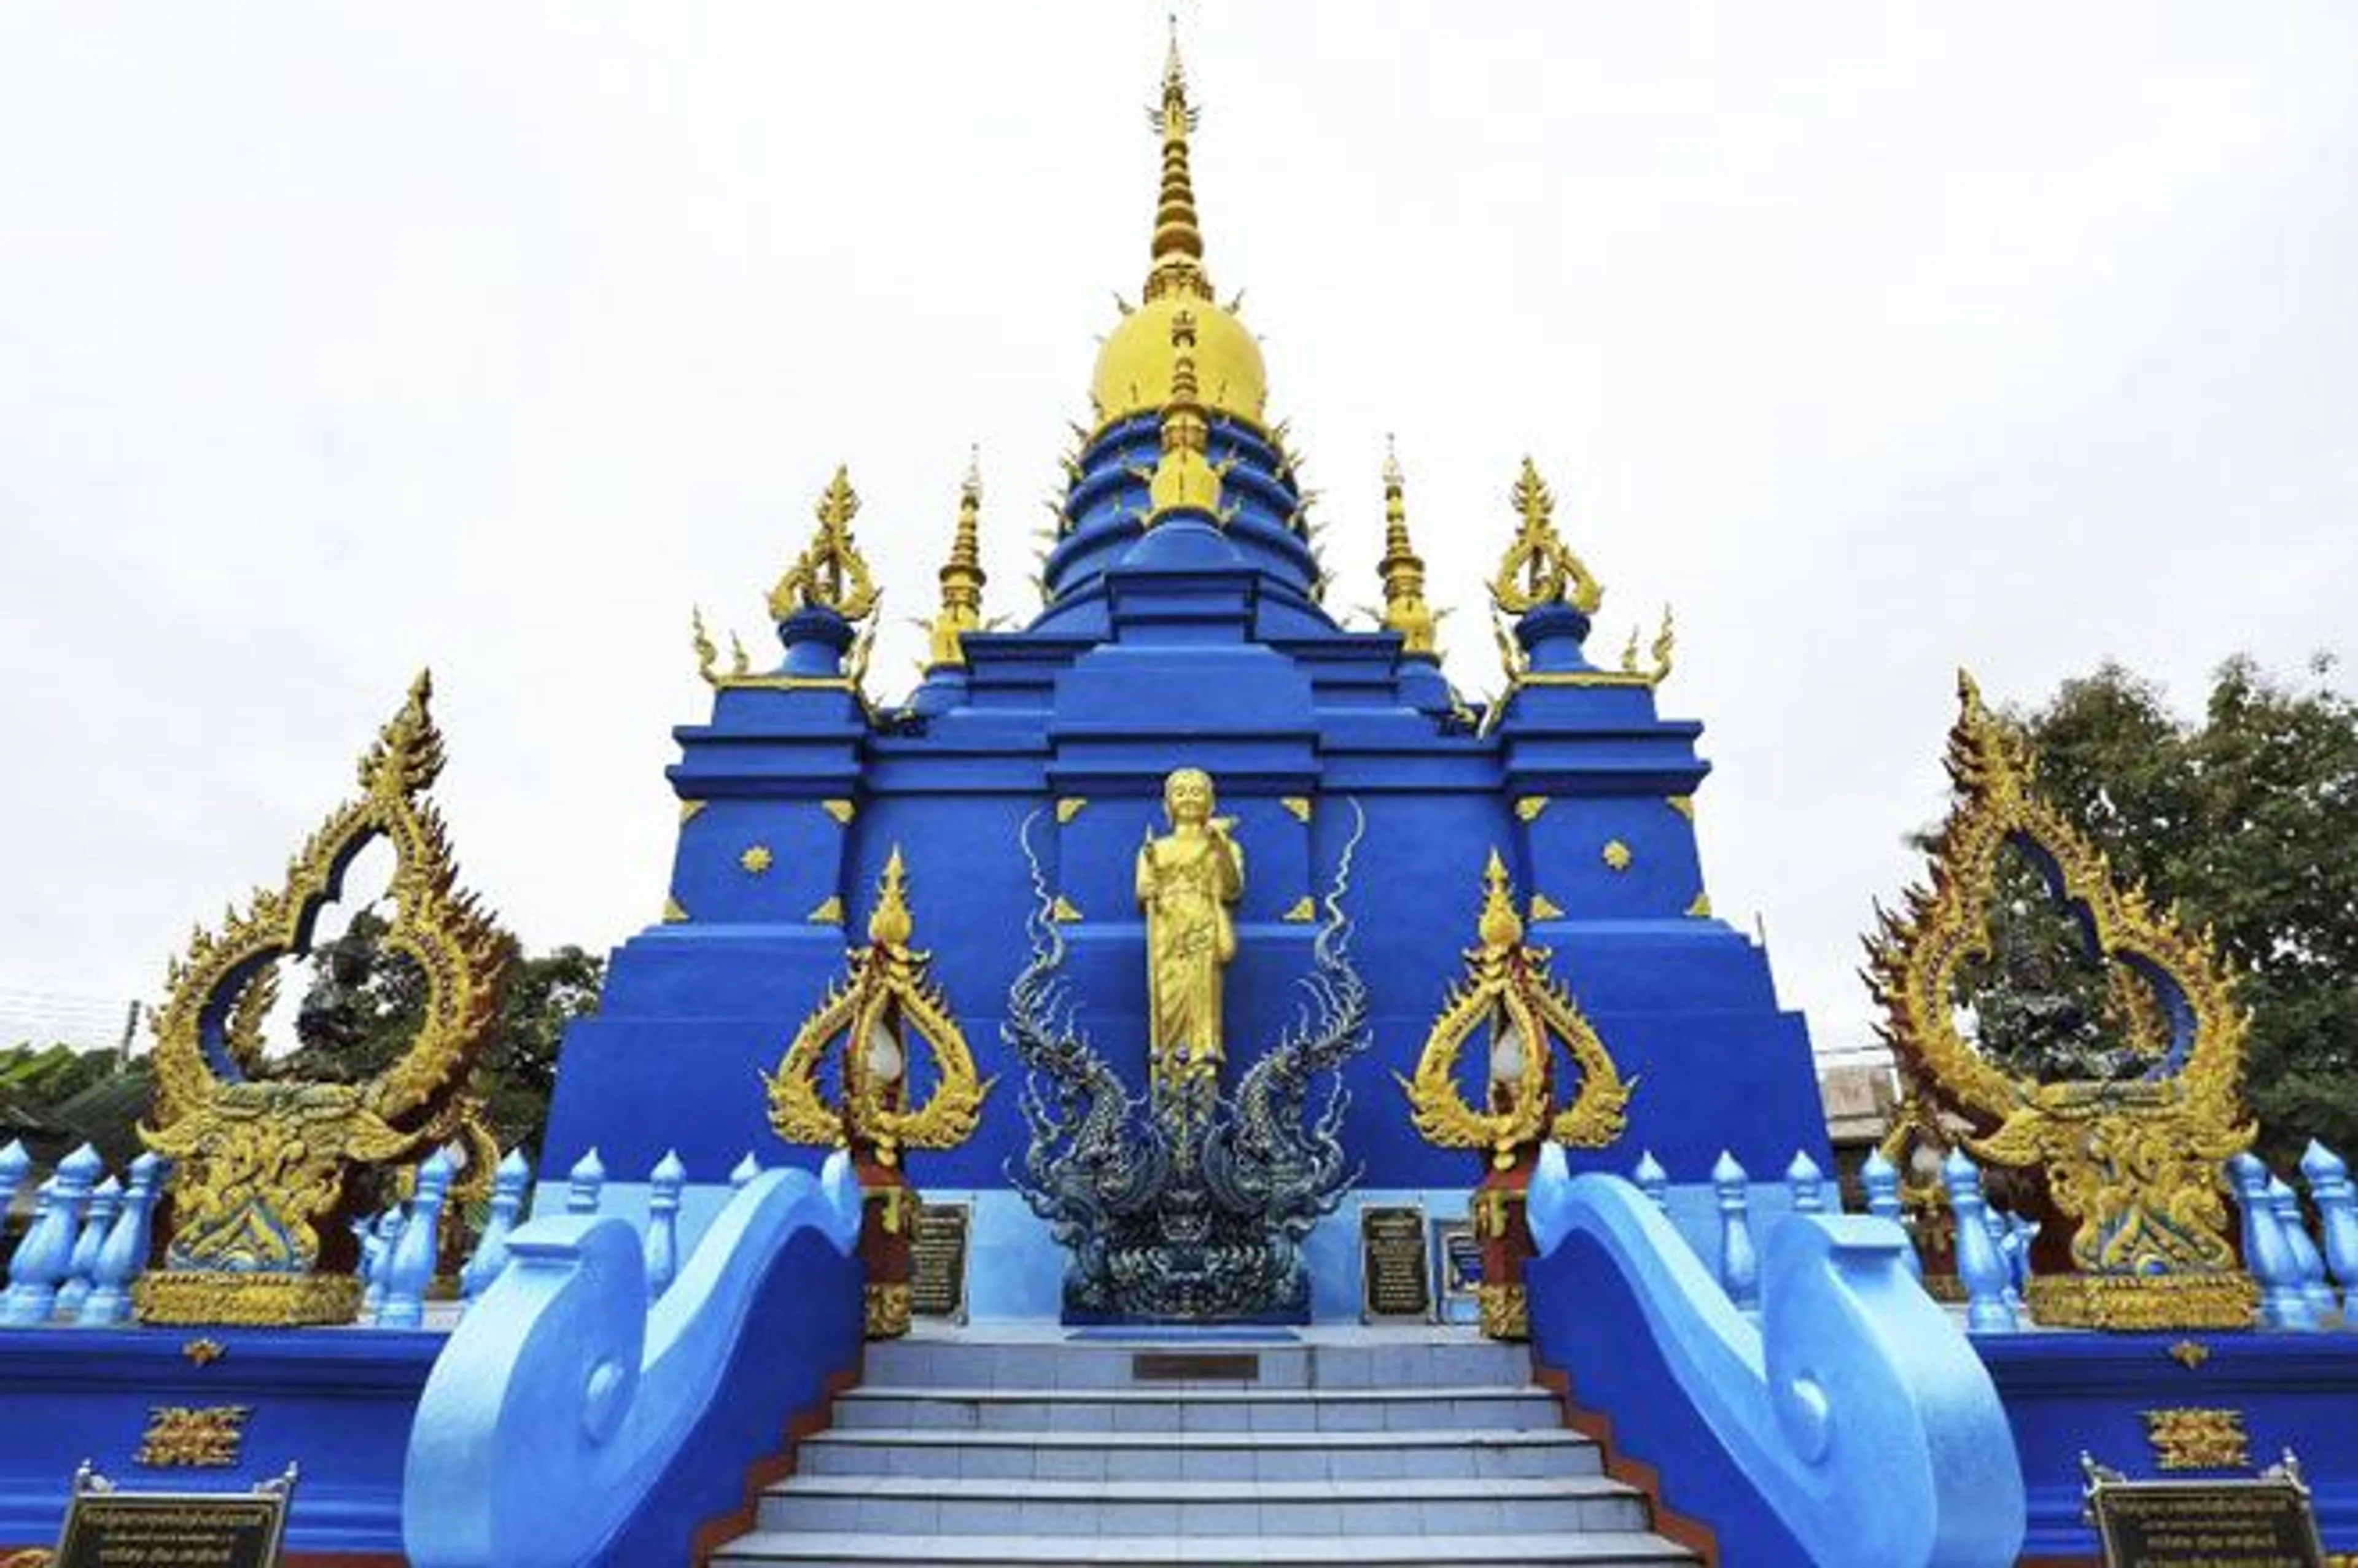 Wat Paknam Bhasicharoen là một trong những ngôi chùa nổi tiếng và quan trọng nhất tại Thái Lan